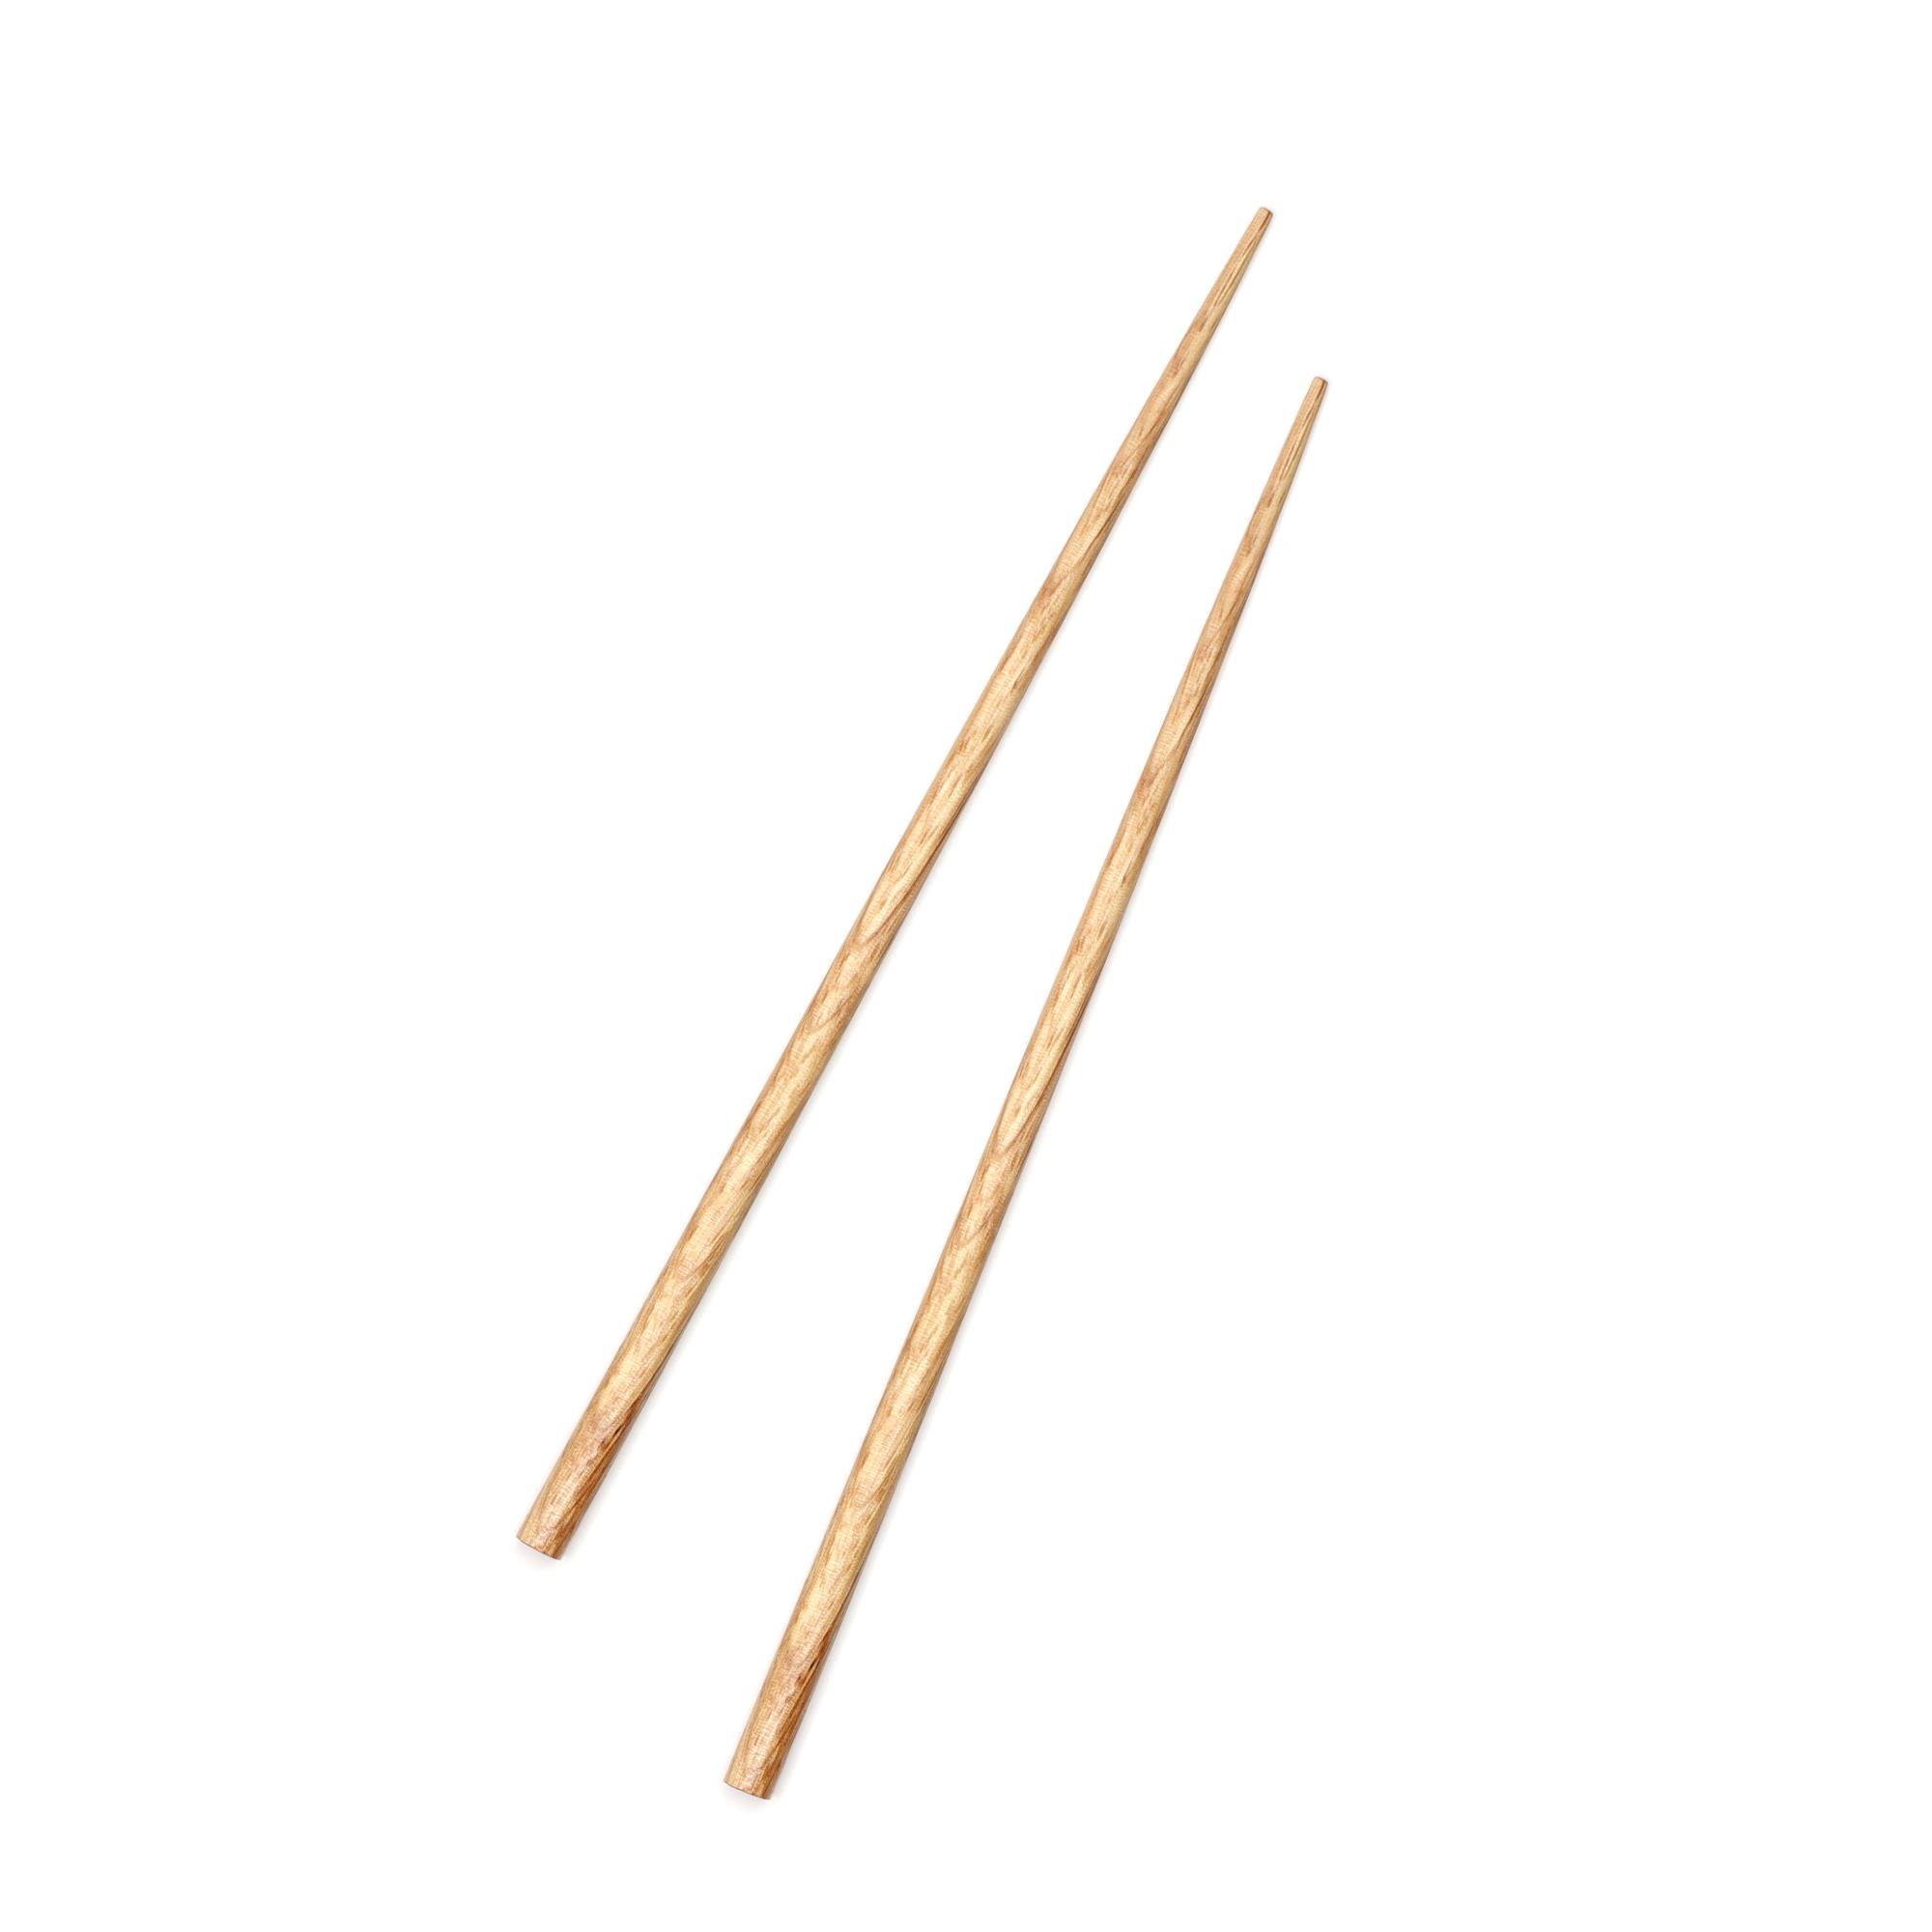 Çok Kullanımlık Bambu Çin Çubuğu (Chopsticks) Ahşap Desen 22,5 cm - 2 Adet